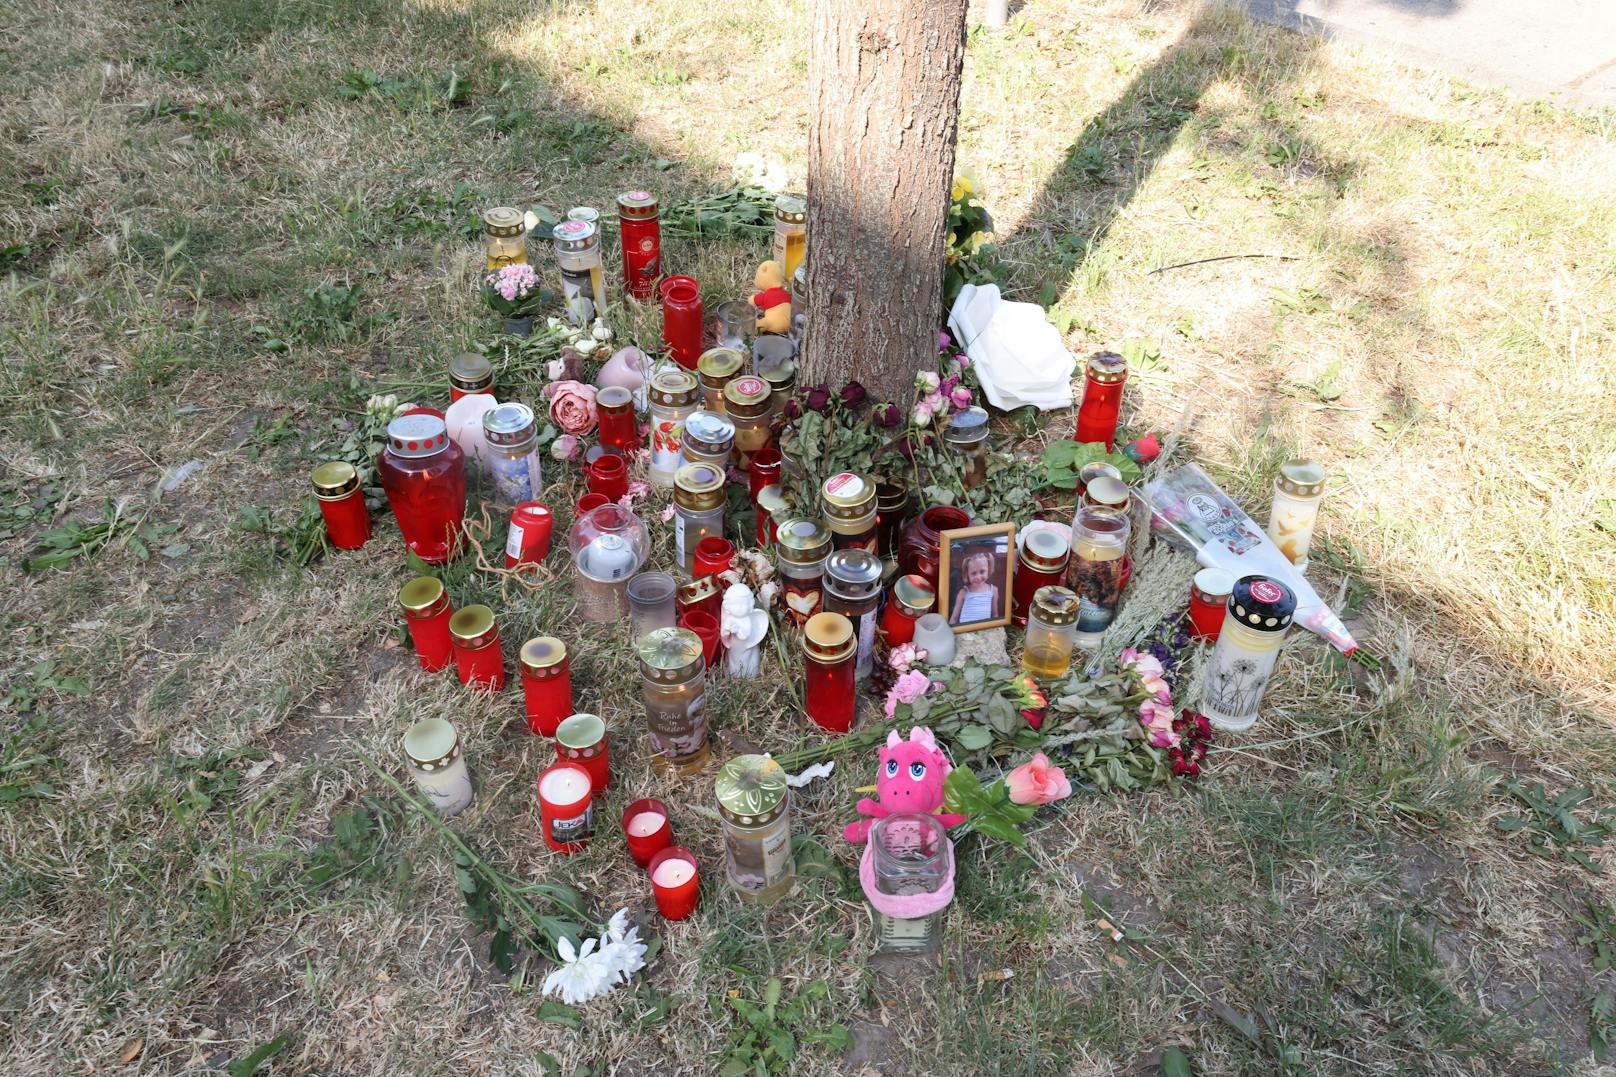 Passanten hatten am Samstagmorgen die 13-Jährige leblos auf einer Grünfläche in der Wiener Donaustadt gefunden.